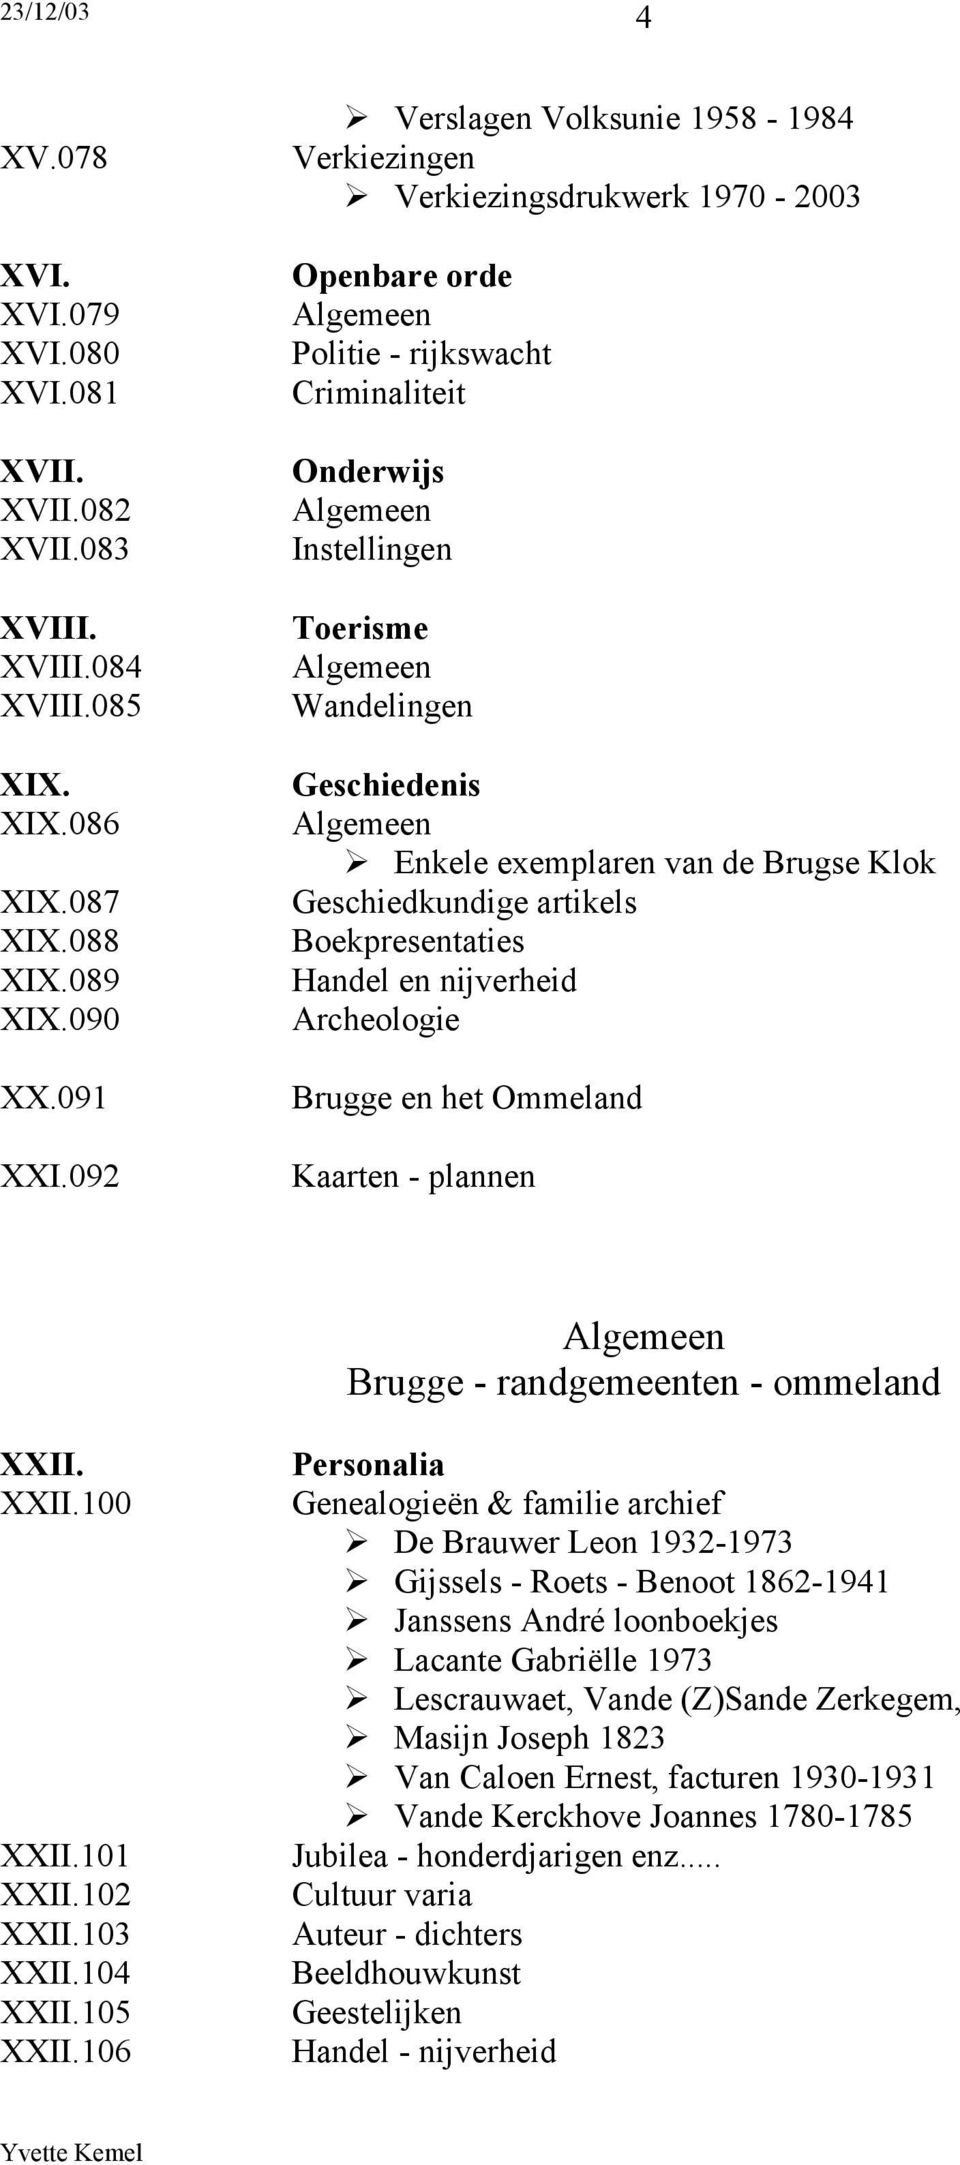 Brugse Klok Geschiedkundige artikels Boekpresentaties Archeologie Brugge en het Ommeland Kaarten - plannen Brugge - randgemeenten - ommeland XXII. XXII.100 XXII.101 XXII.102 XXII.103 XXII.104 XXII.